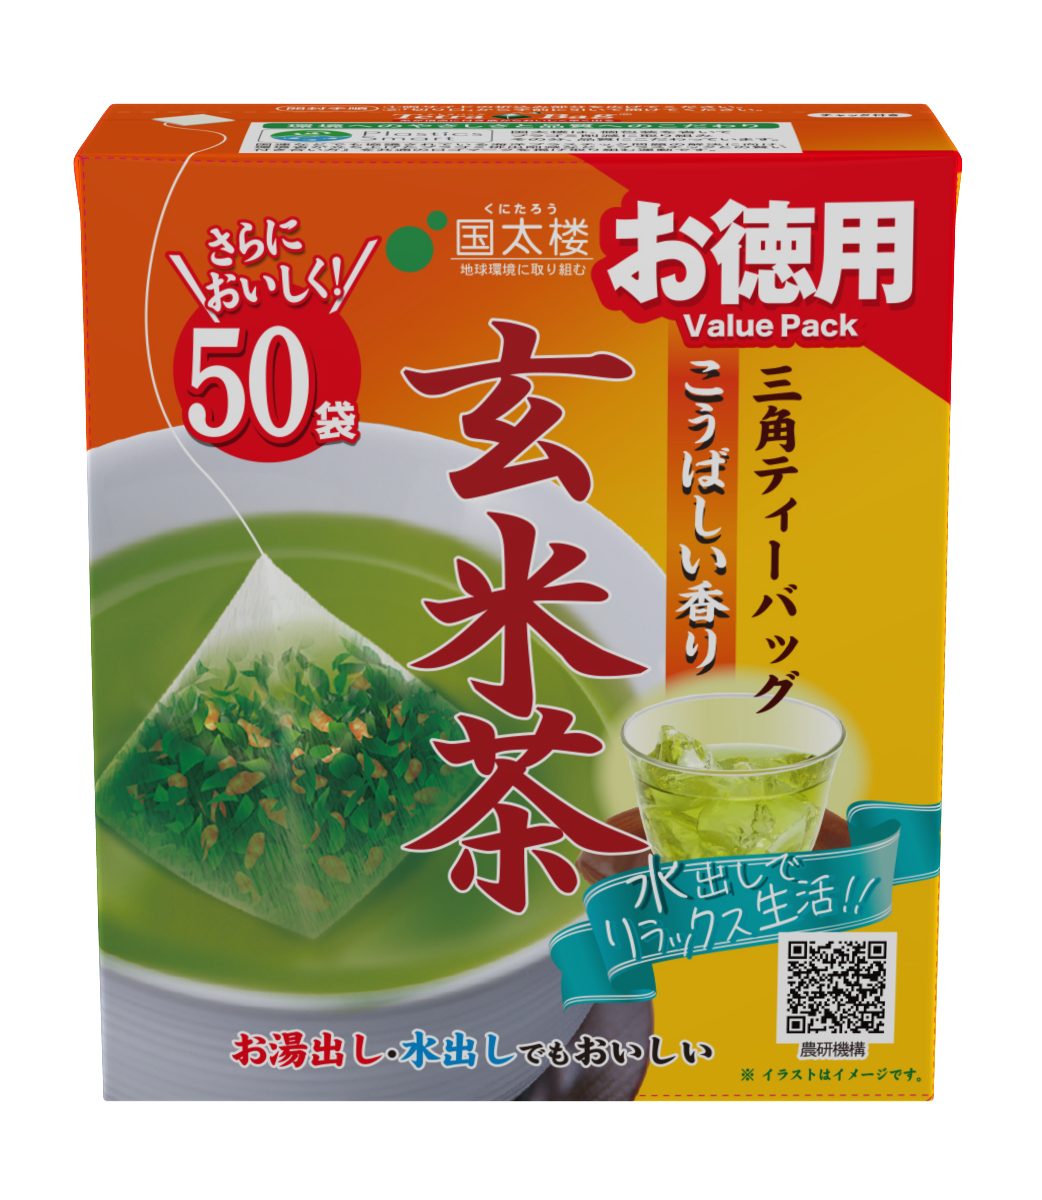 50Pお徳用こうばしい香り玄米茶三角TB | お茶とコーヒーの国太楼